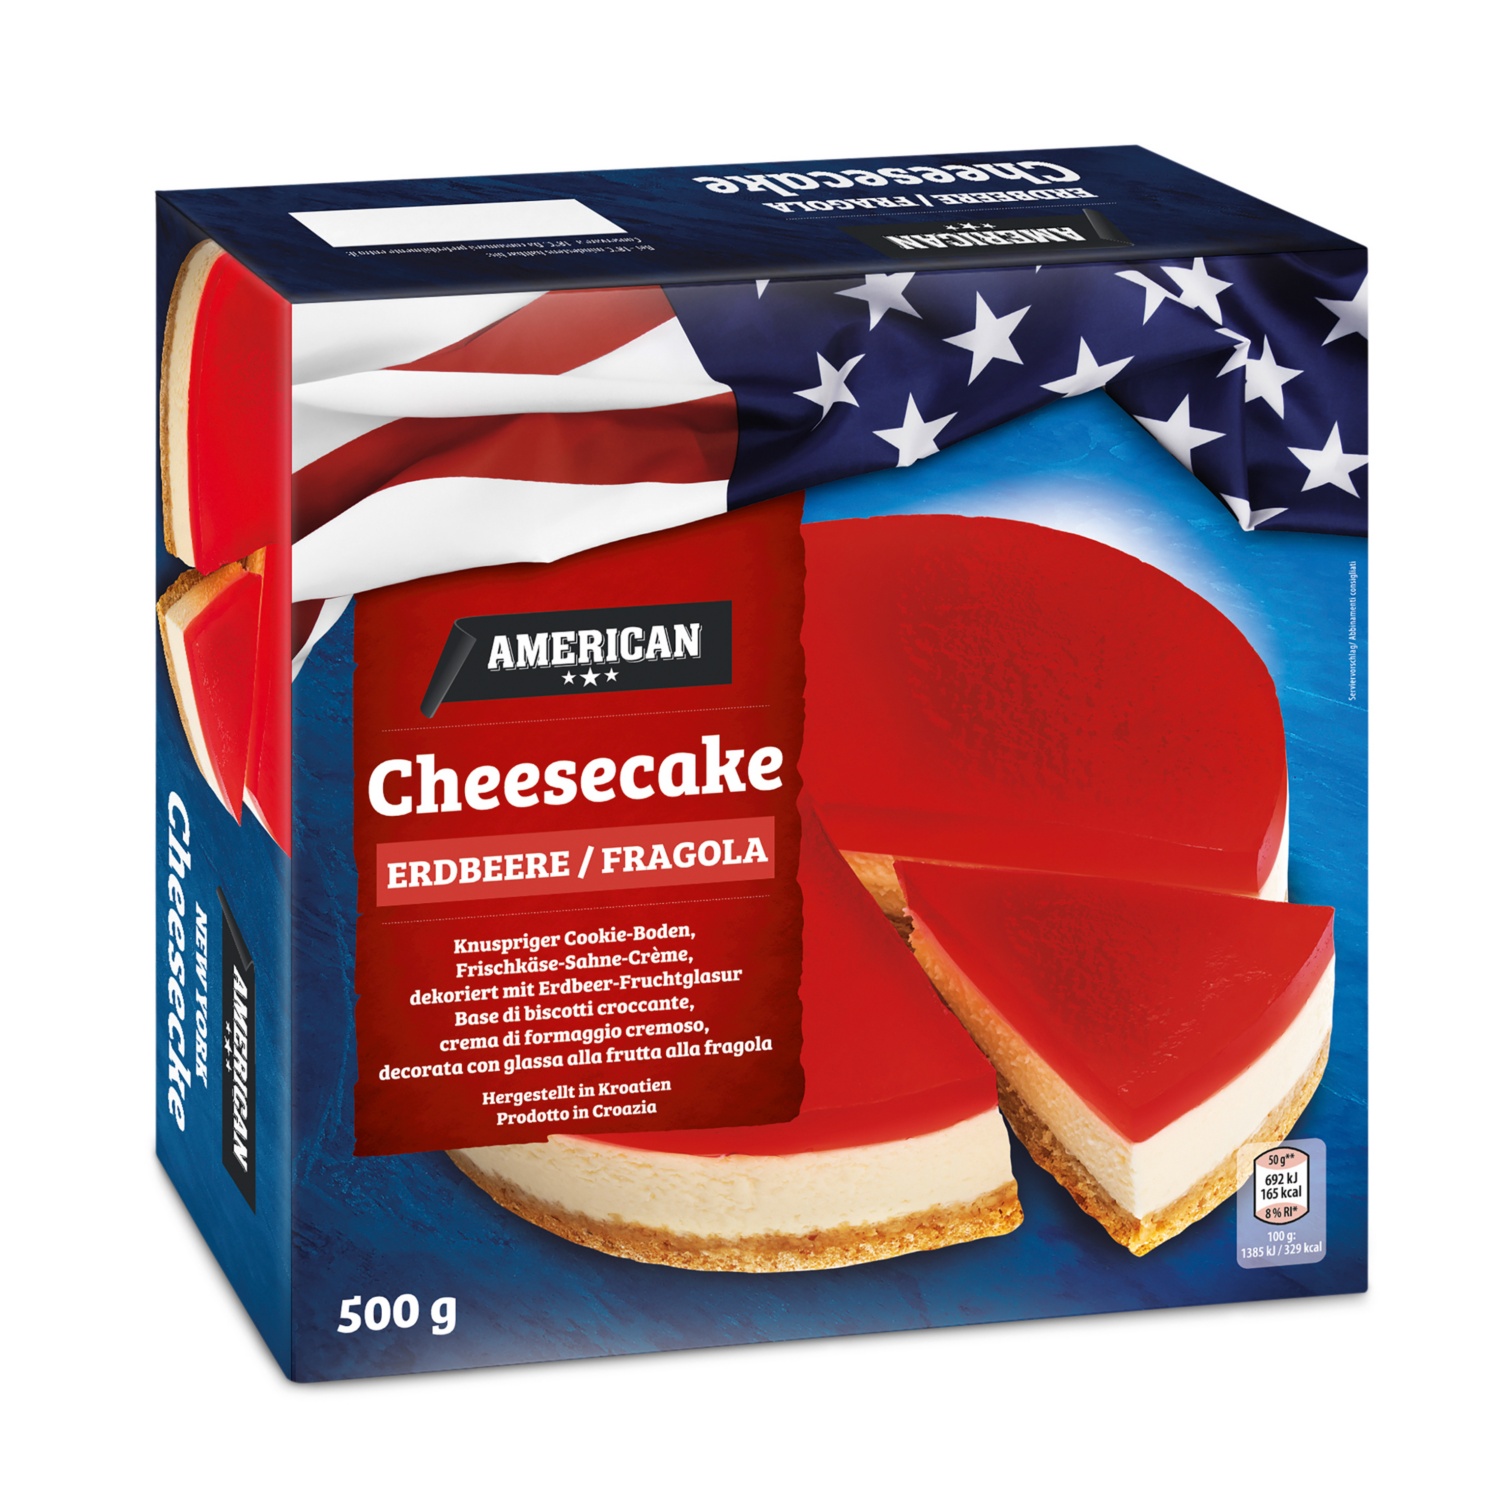 AMERICAN Cheesecake alla fragola